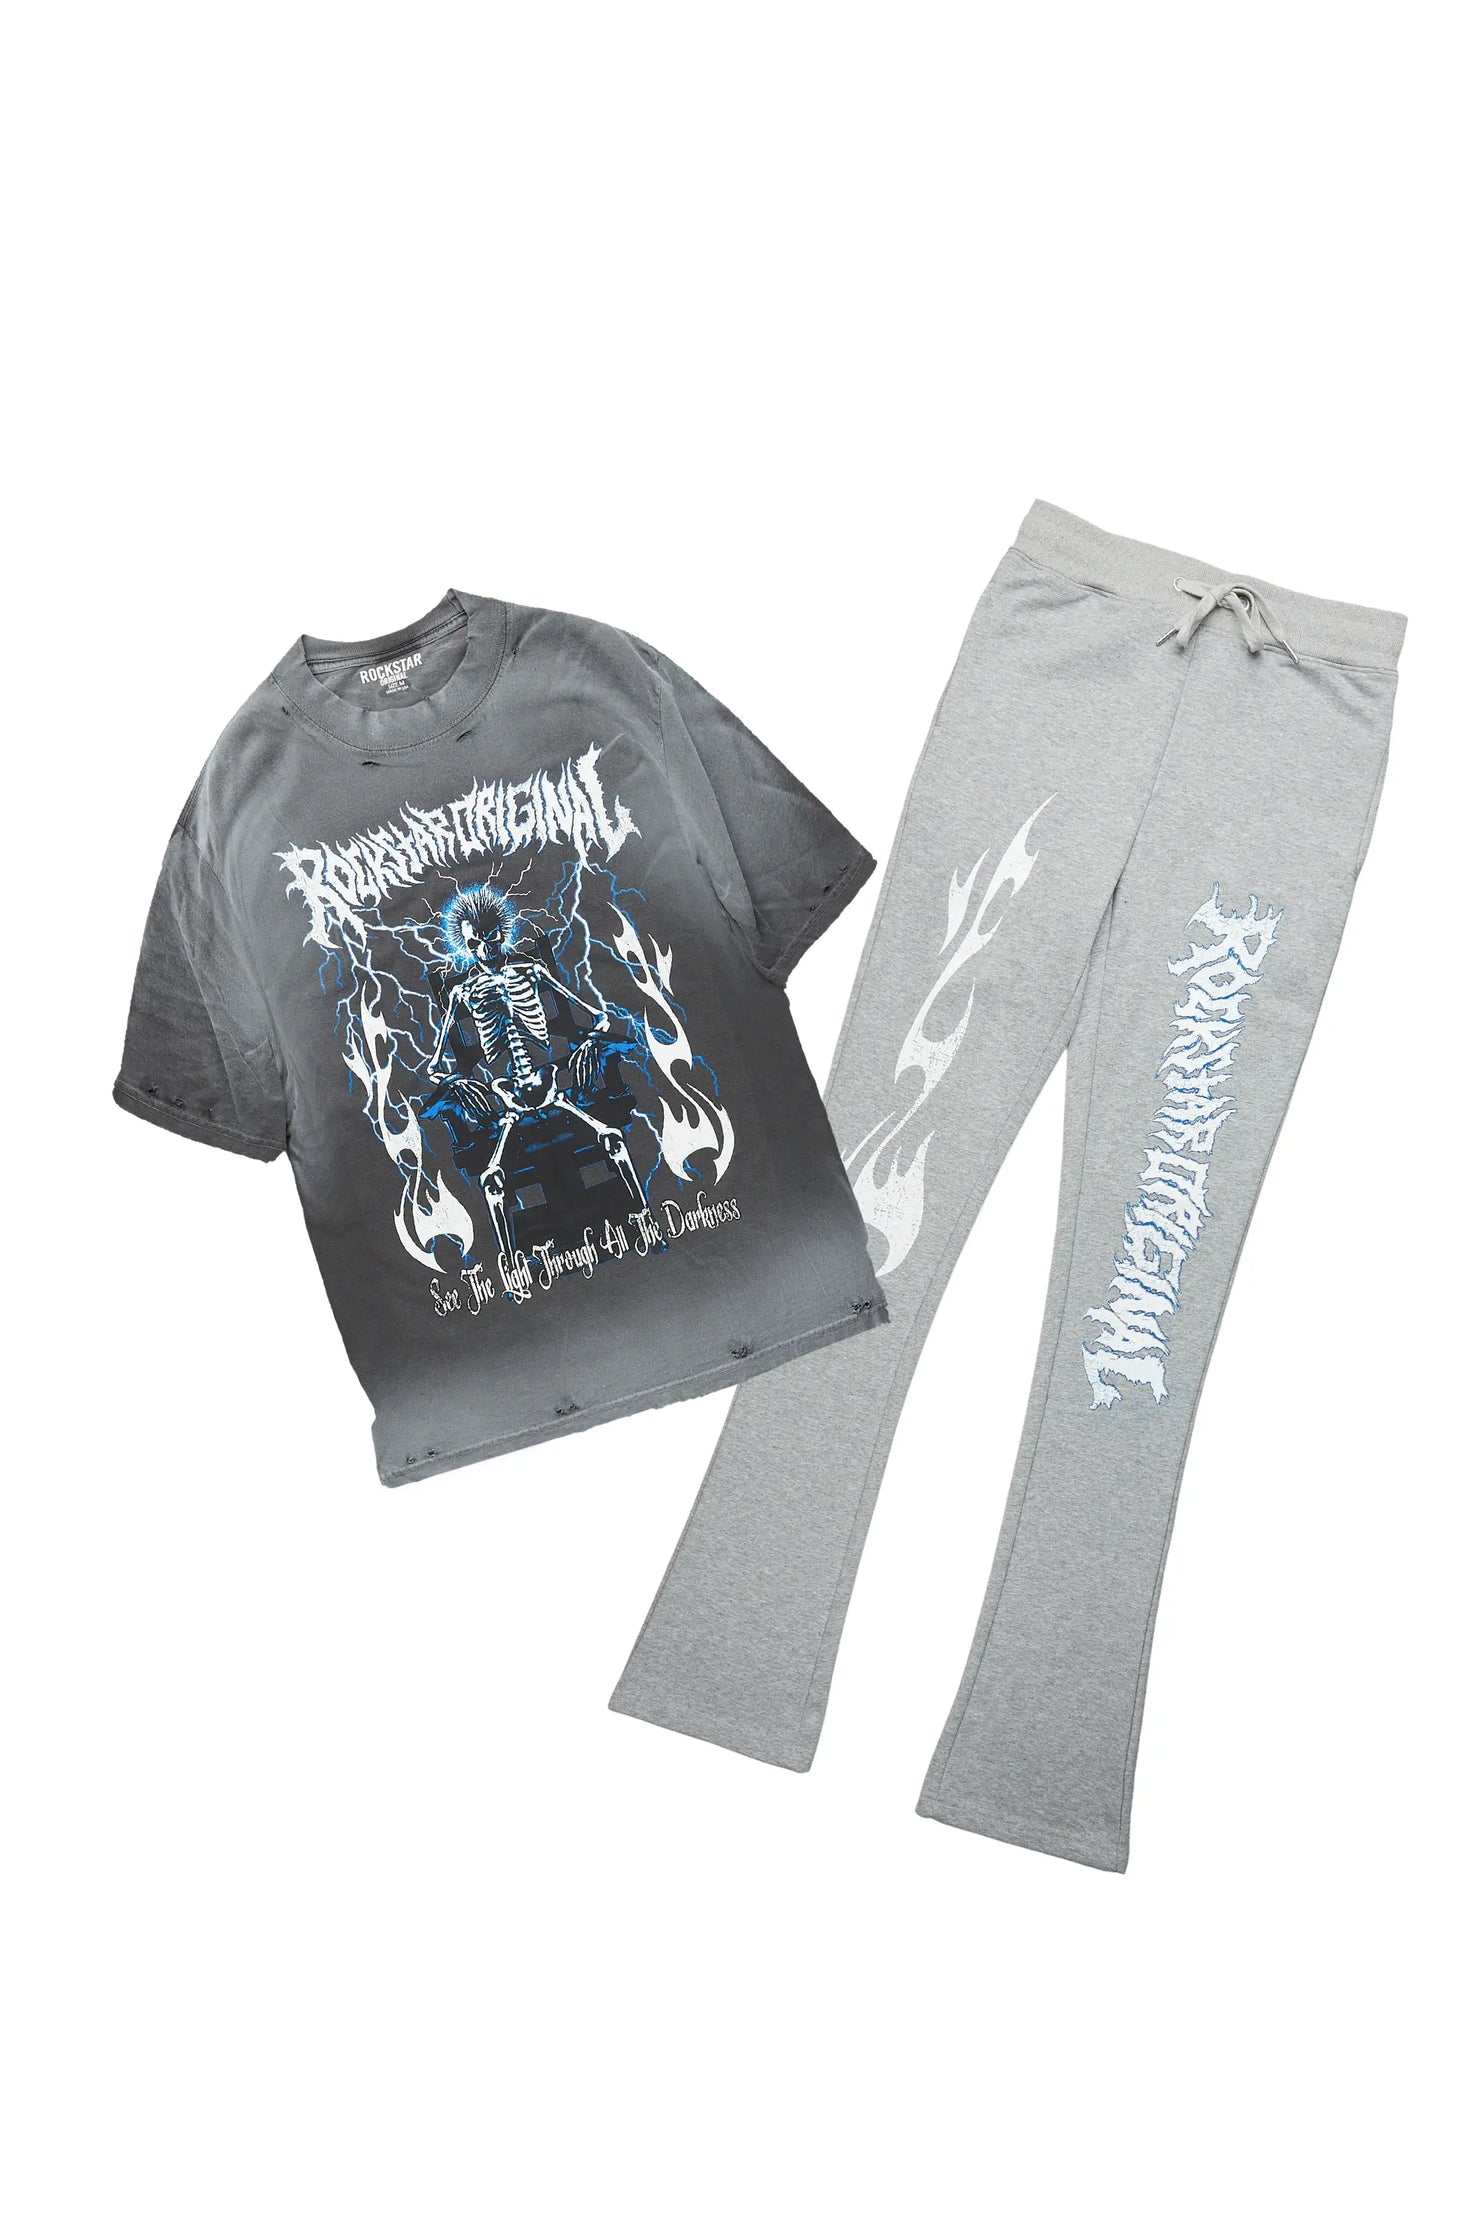 Exodus Charcoal Grey Oversized T-Shirt/Stacked Flare Track Pant Set